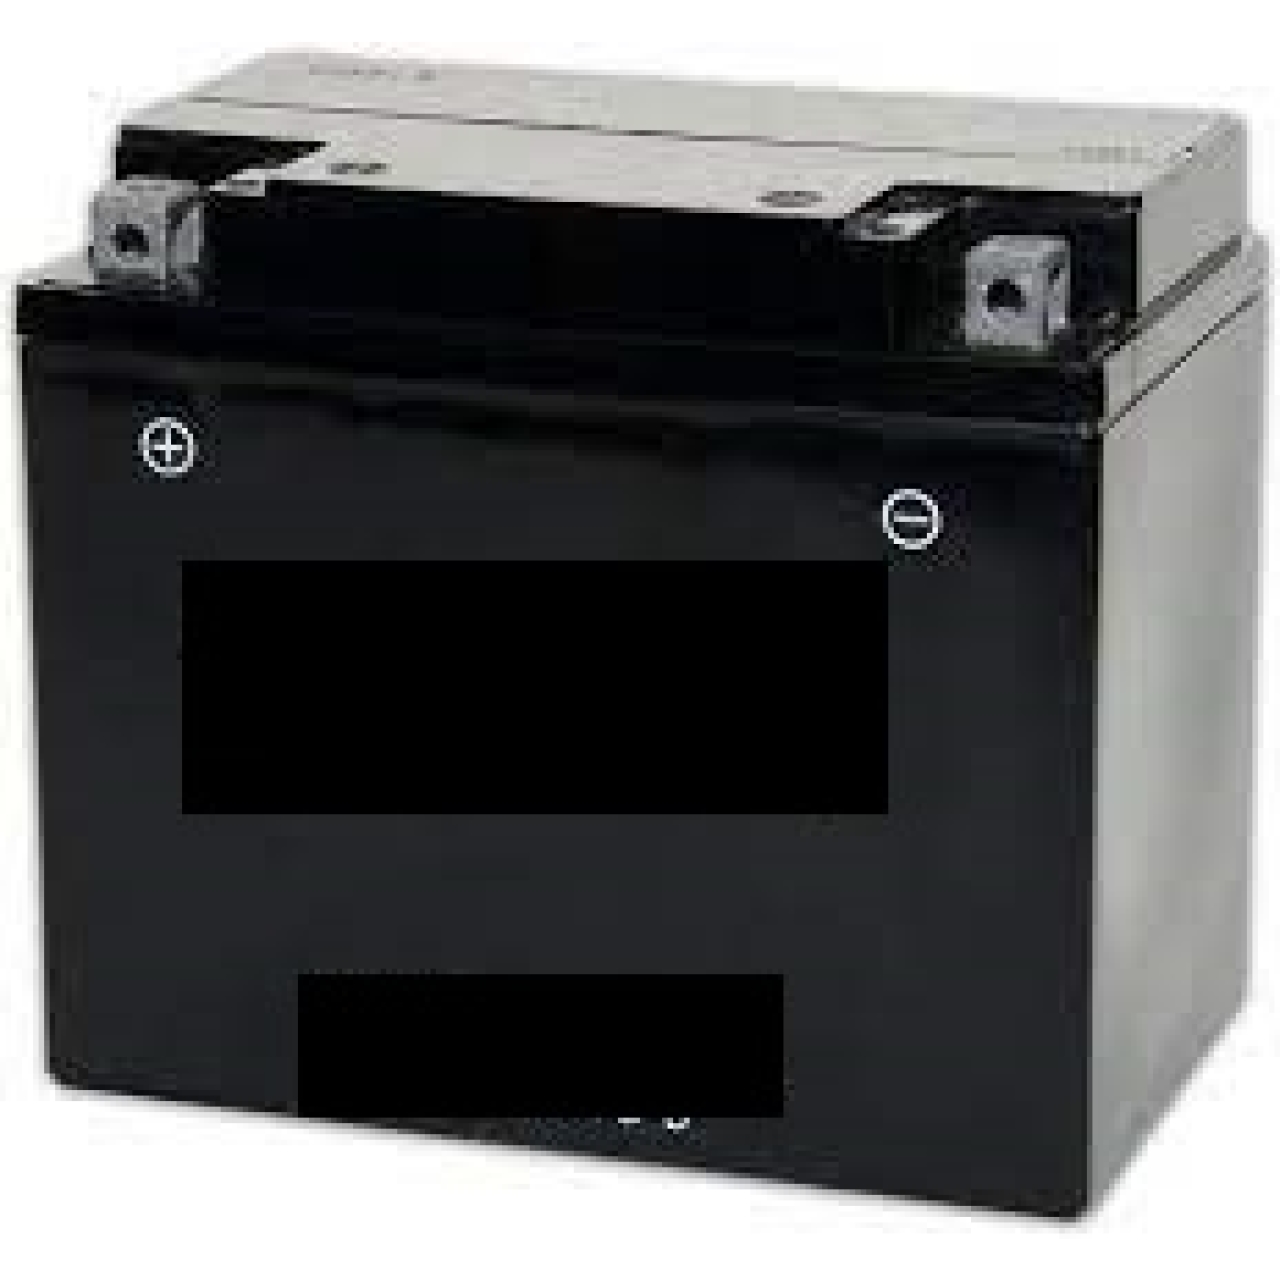 Gel-Batterie für Kehrsaugmaschine tks100-70